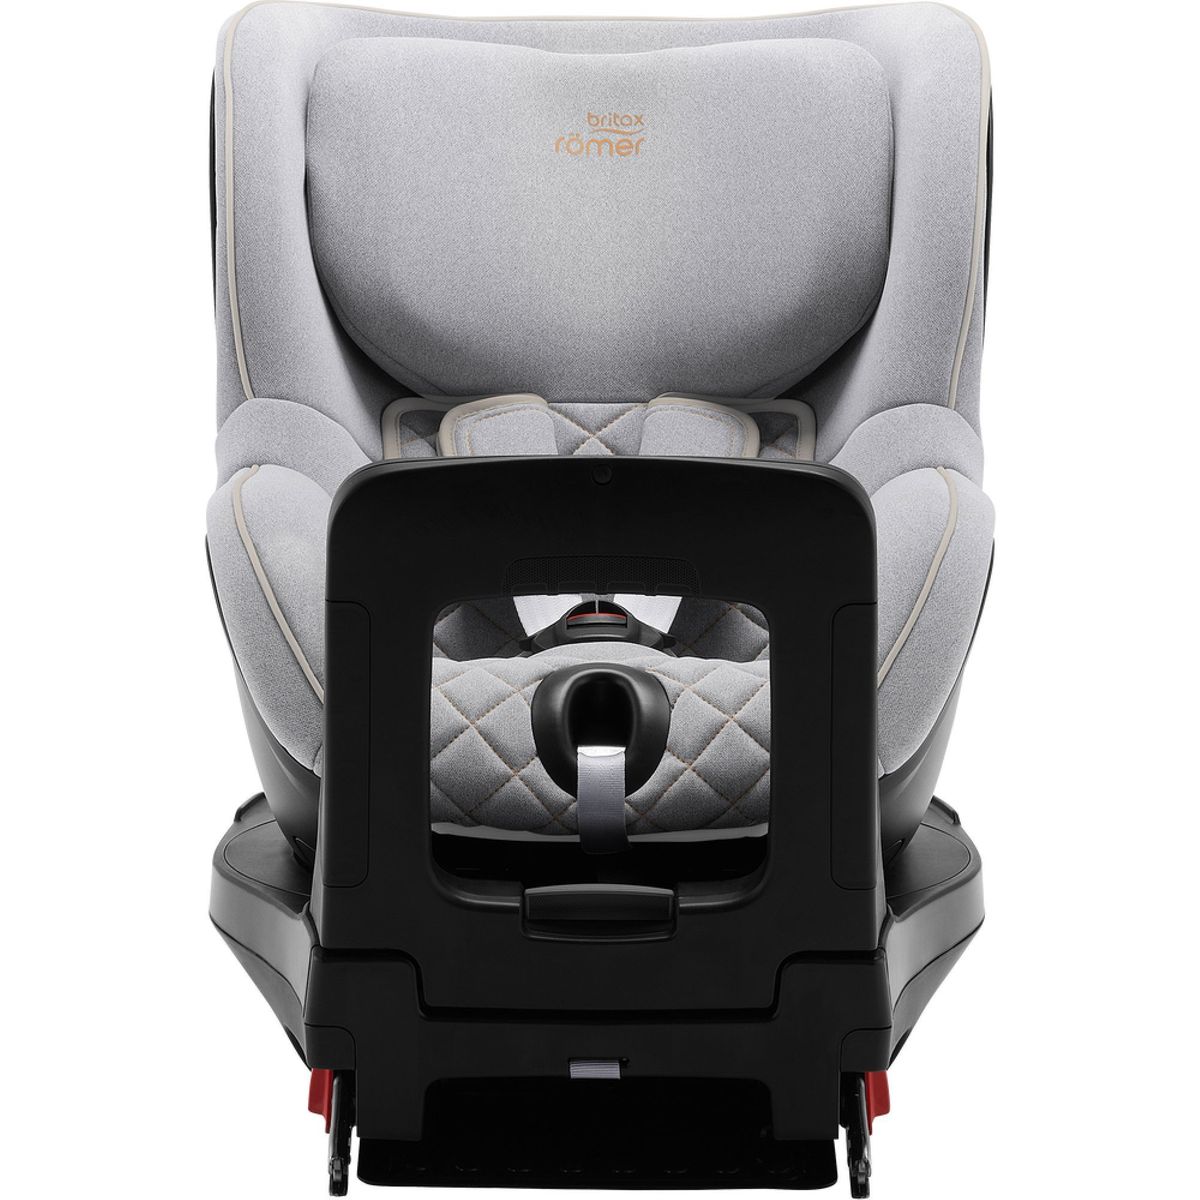 Les sièges auto pivotants Britax DUALFIX i-Size, Dualfix plus et